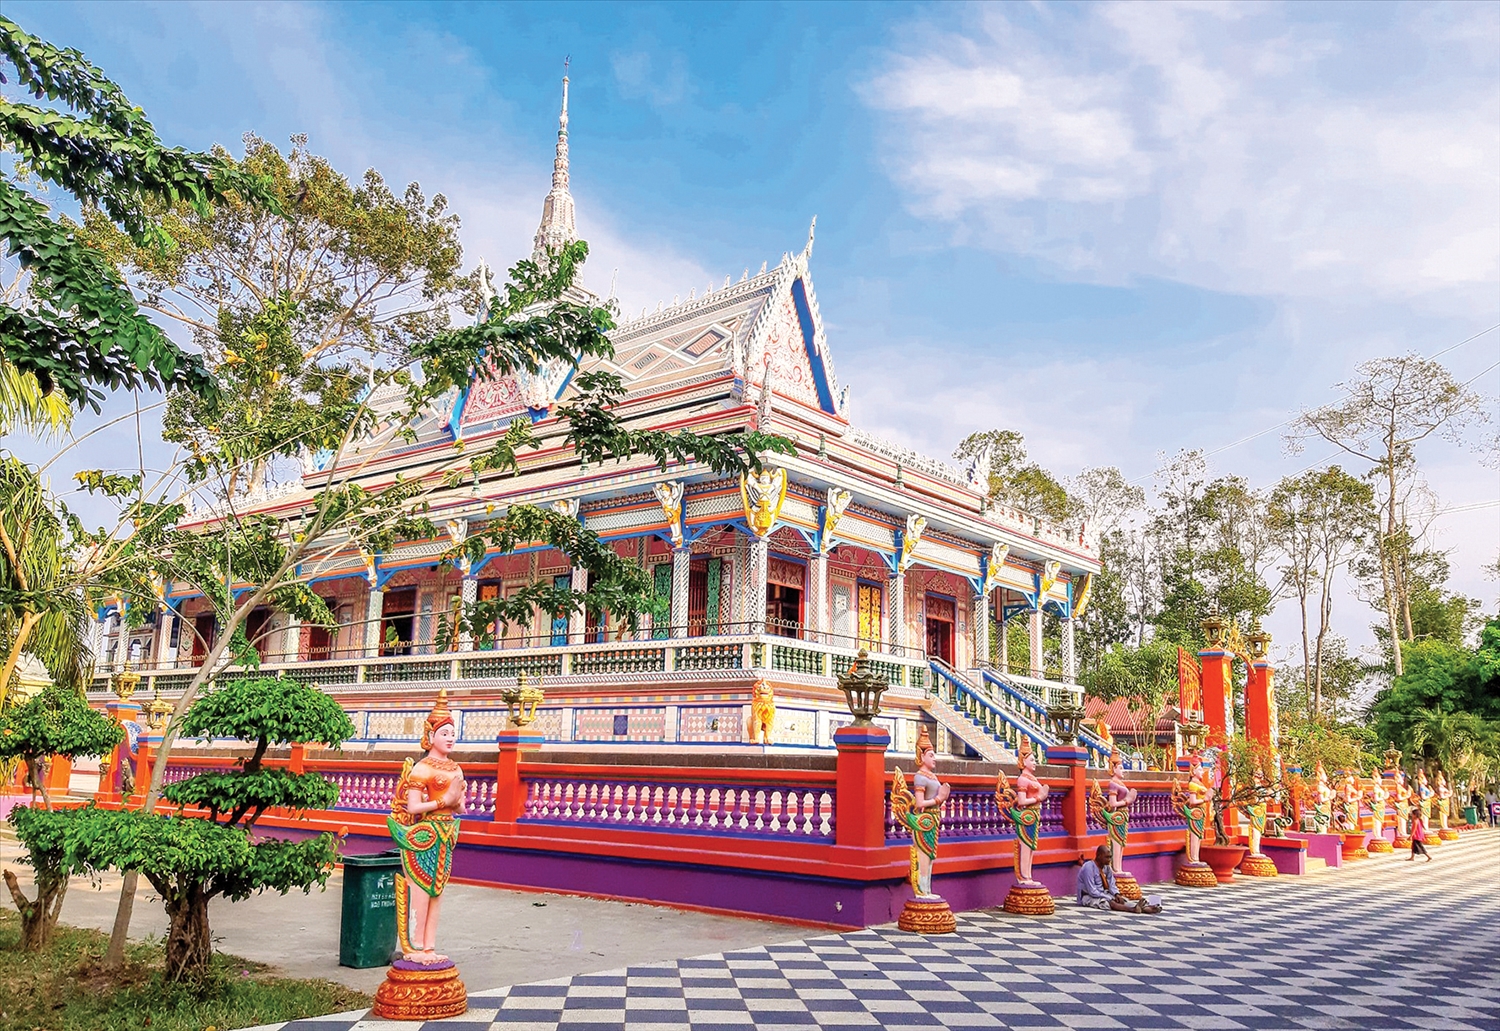 Không gian chùa Sro Lôn (chùa Chén Kiểu) xã Đại Tâm, huyện Mỹ Xuyên, Sóc Trăng được trang trí bằng các họa tiết, phù điêu bắt mắt bởi óc sáng tạo và tài hoa của các nghệ nhân Khmer